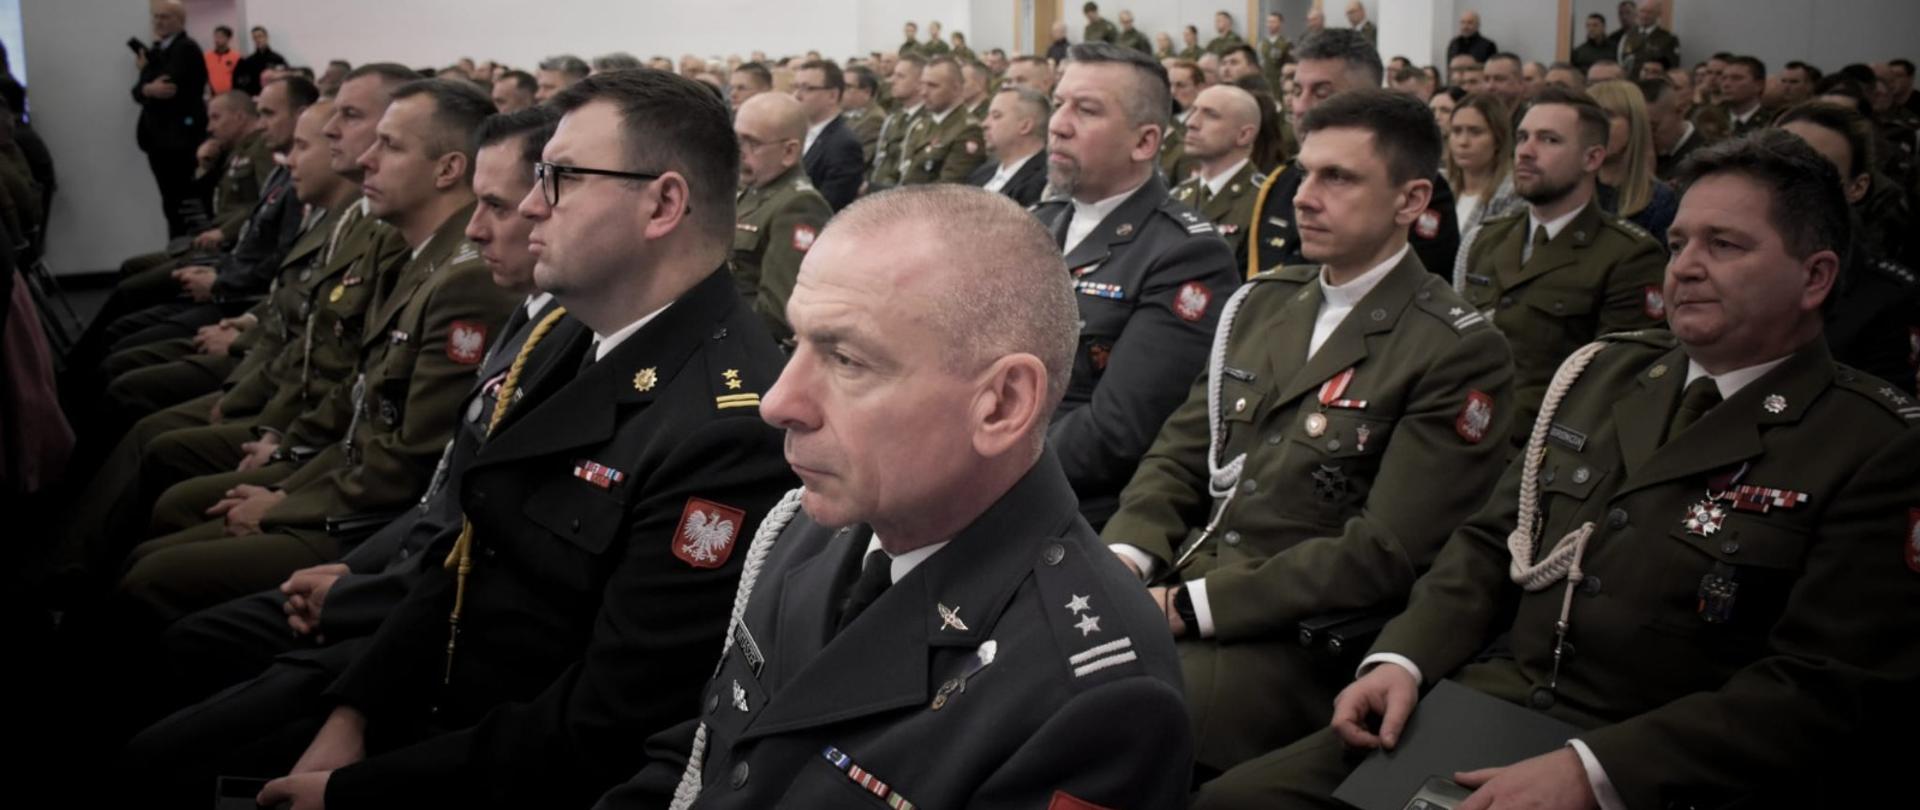 Przedstawiciele służb w mundurach galowych w trakcie uroczystości